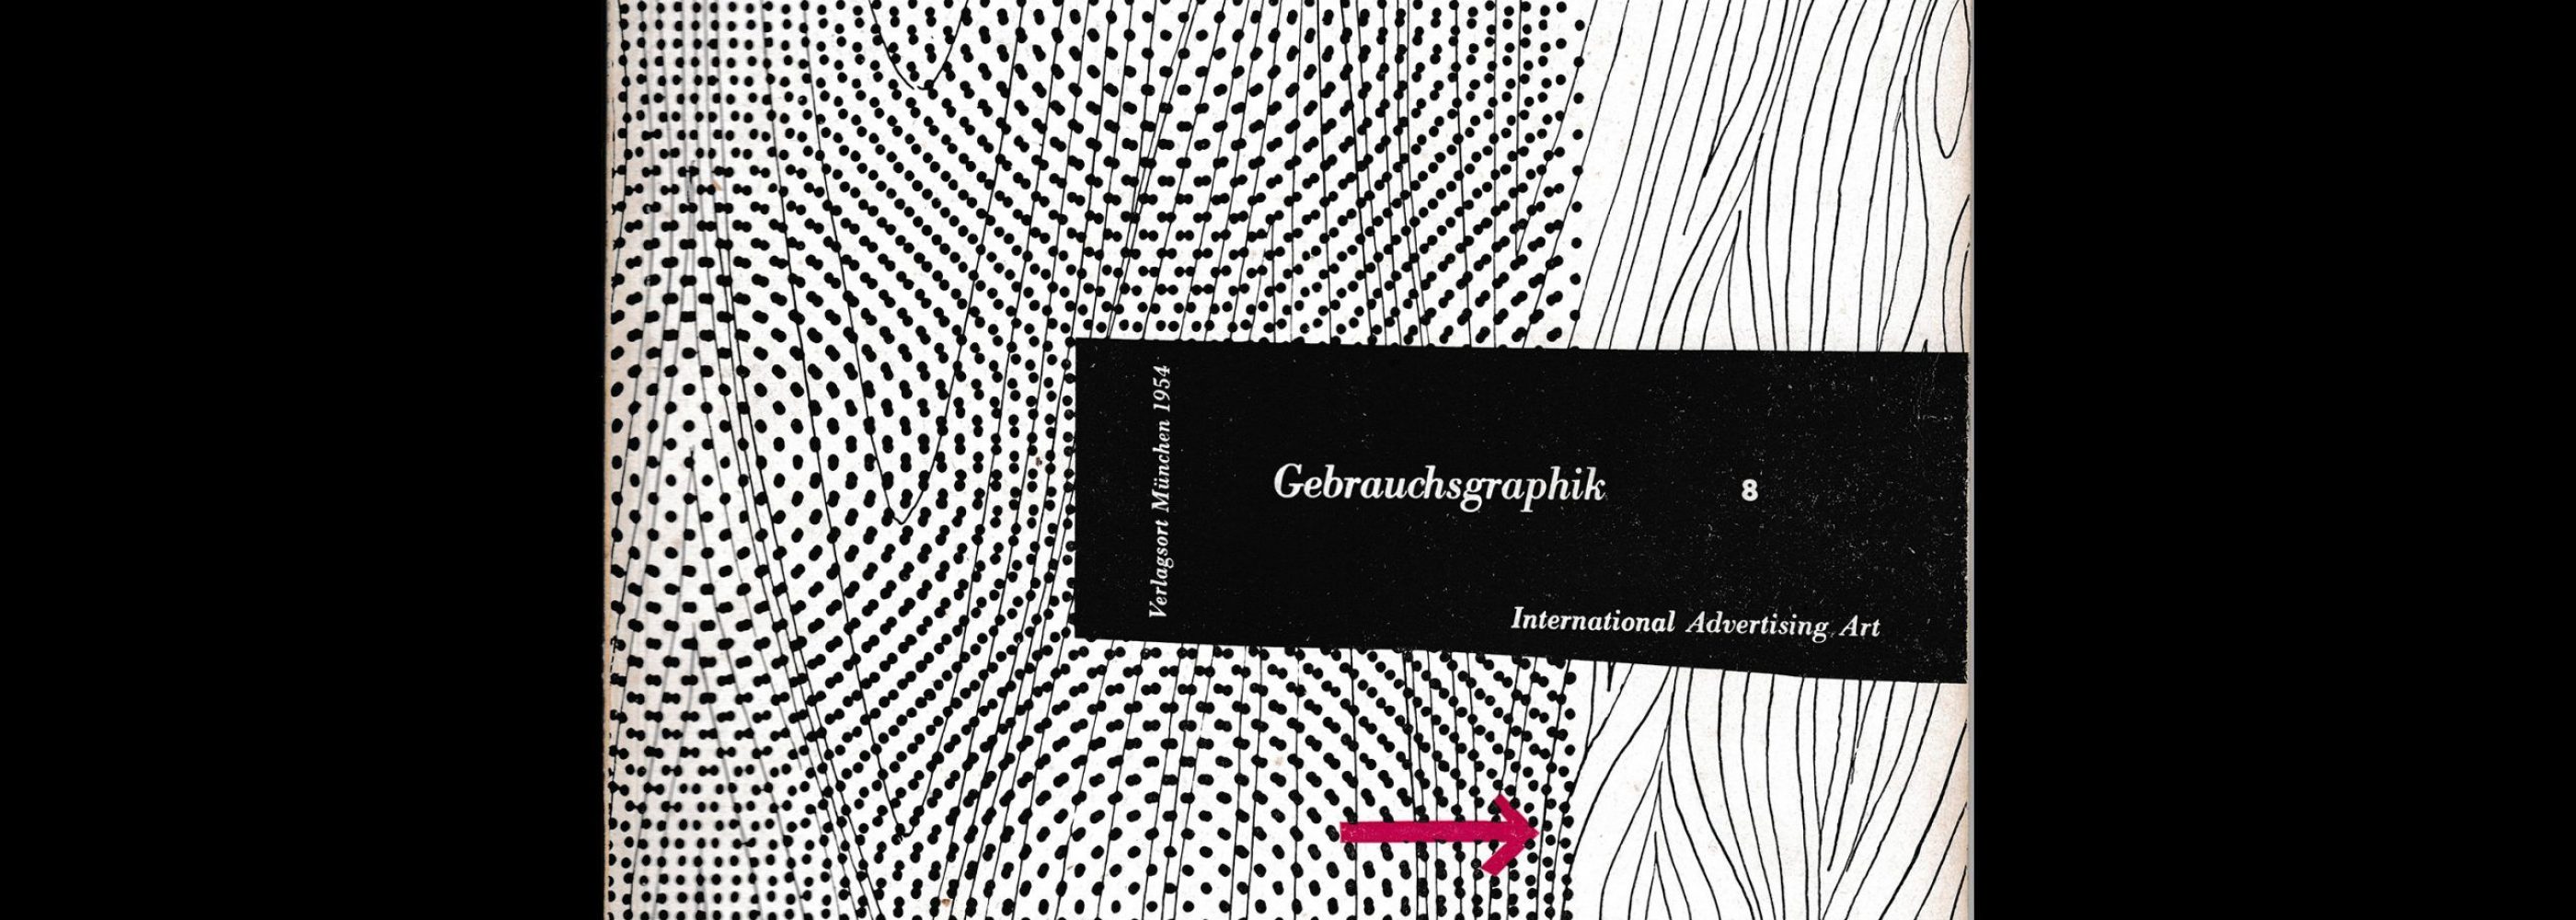 Gebrauchsgraphik, 8, 1954. Cover design by Helmut Lortz